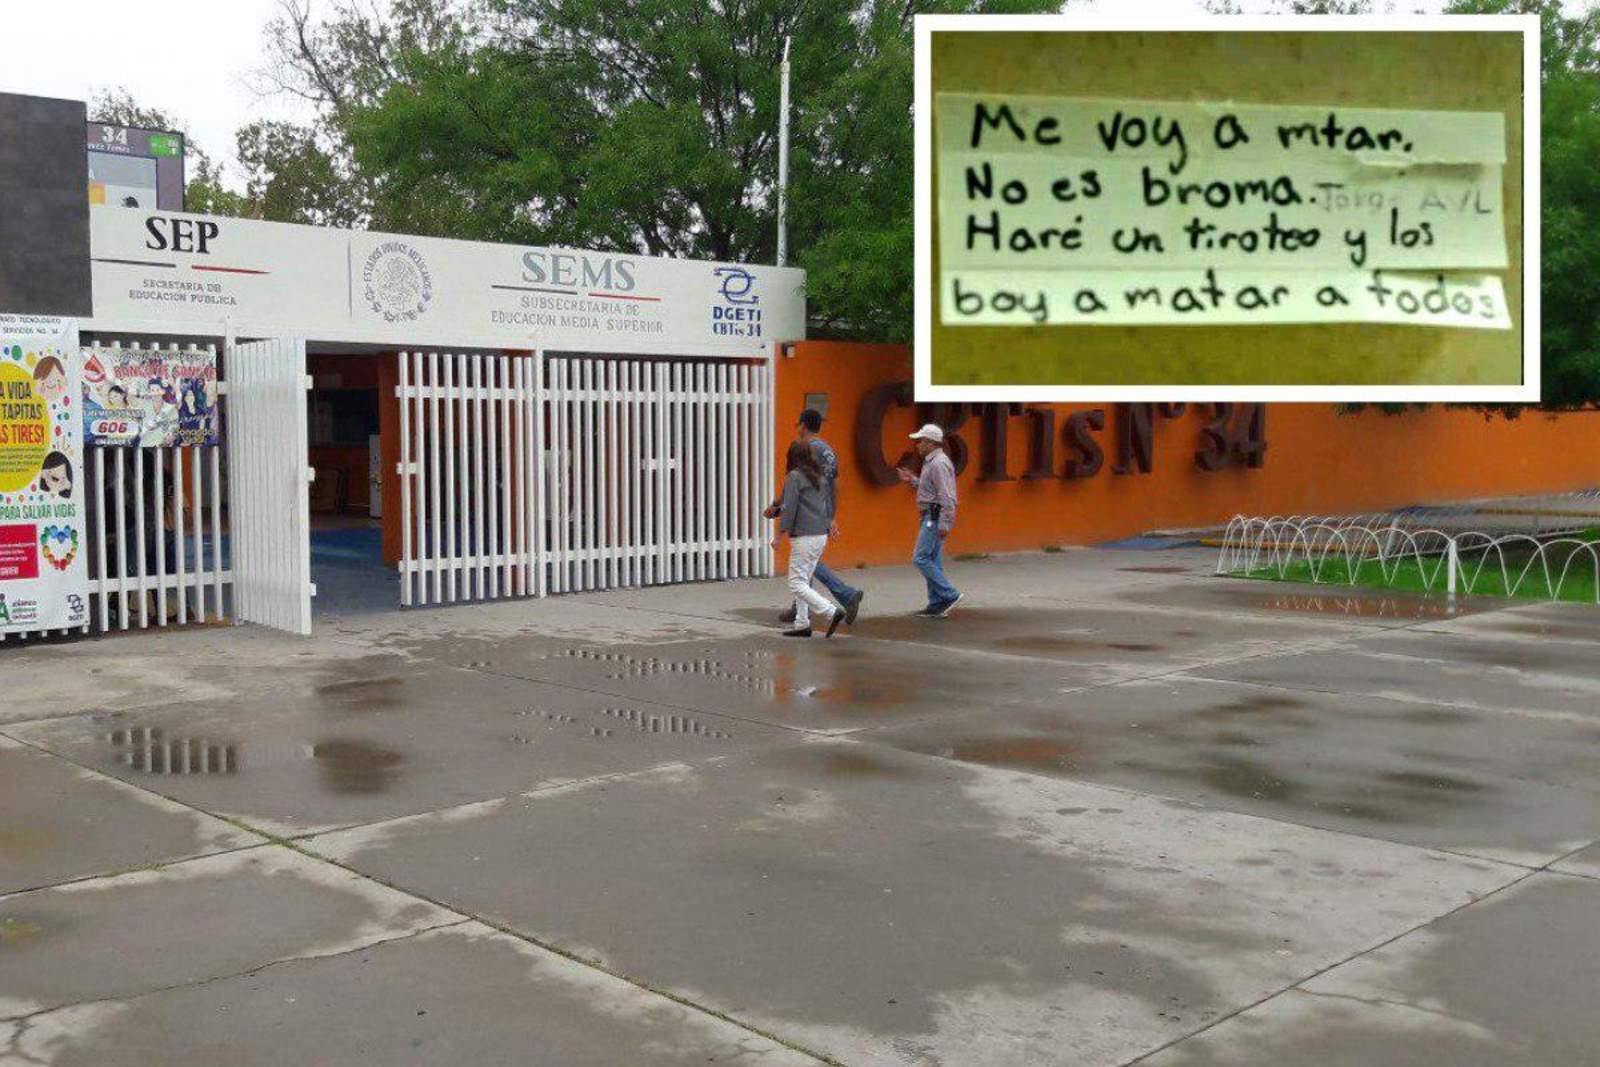 Suspenden clases en escuela de Piedras Negras por amenaza de tiroteo